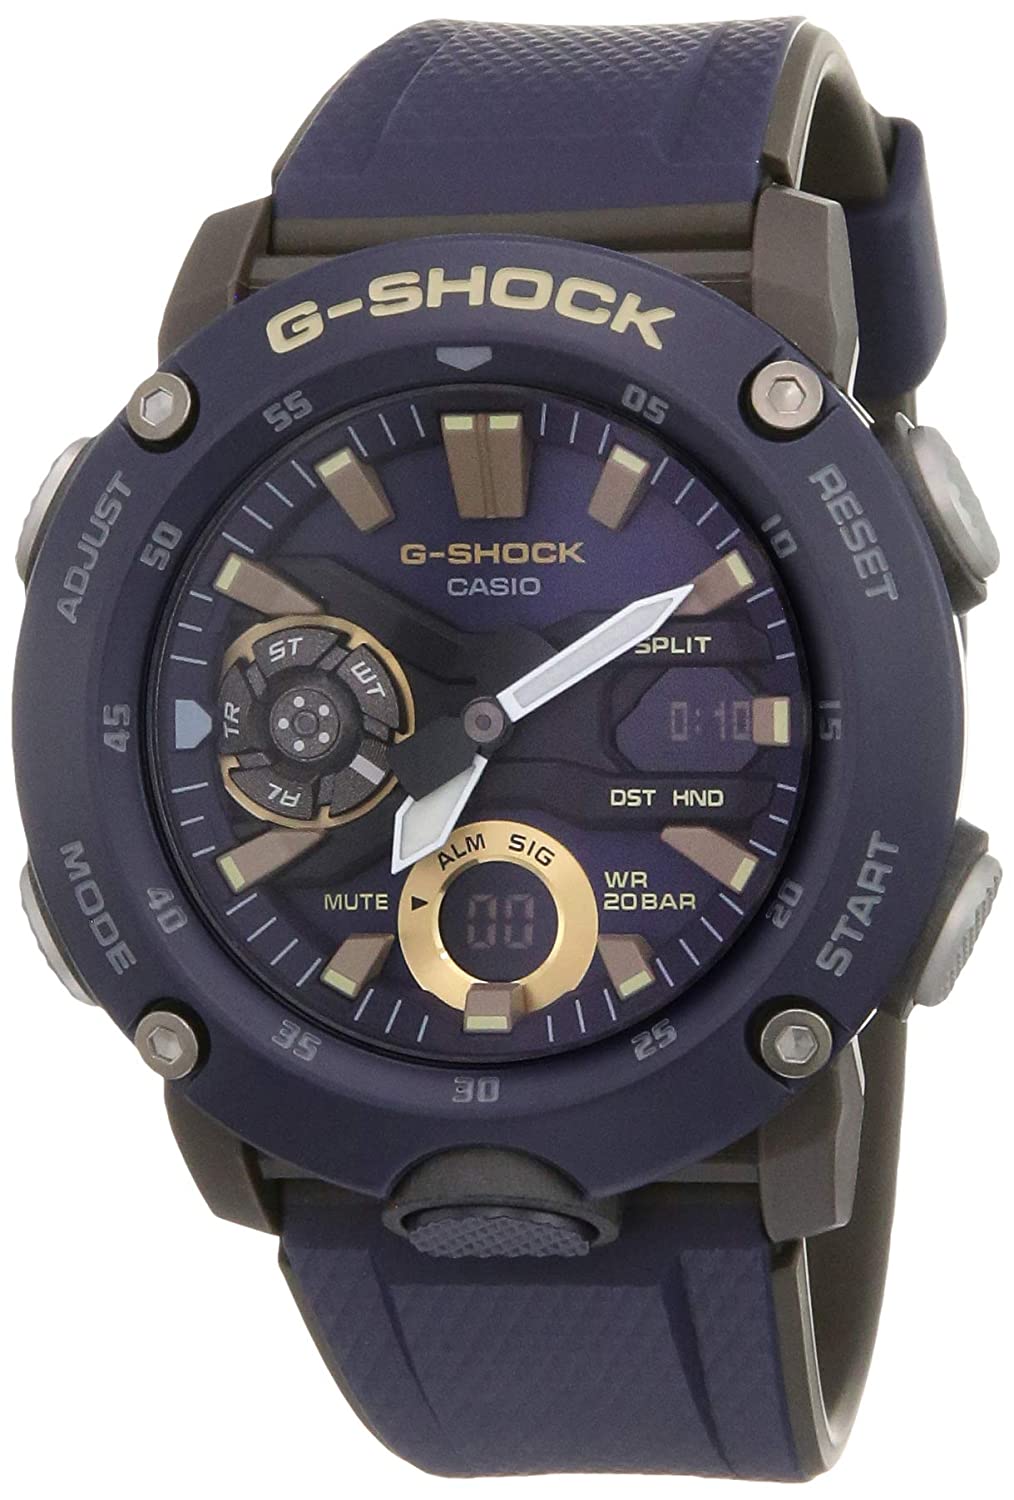 कैसियो जी शॉक एनालॉग डिजिटल ब्लू डायल पुरुषों की घड़ी GA 2000 2ADR G951